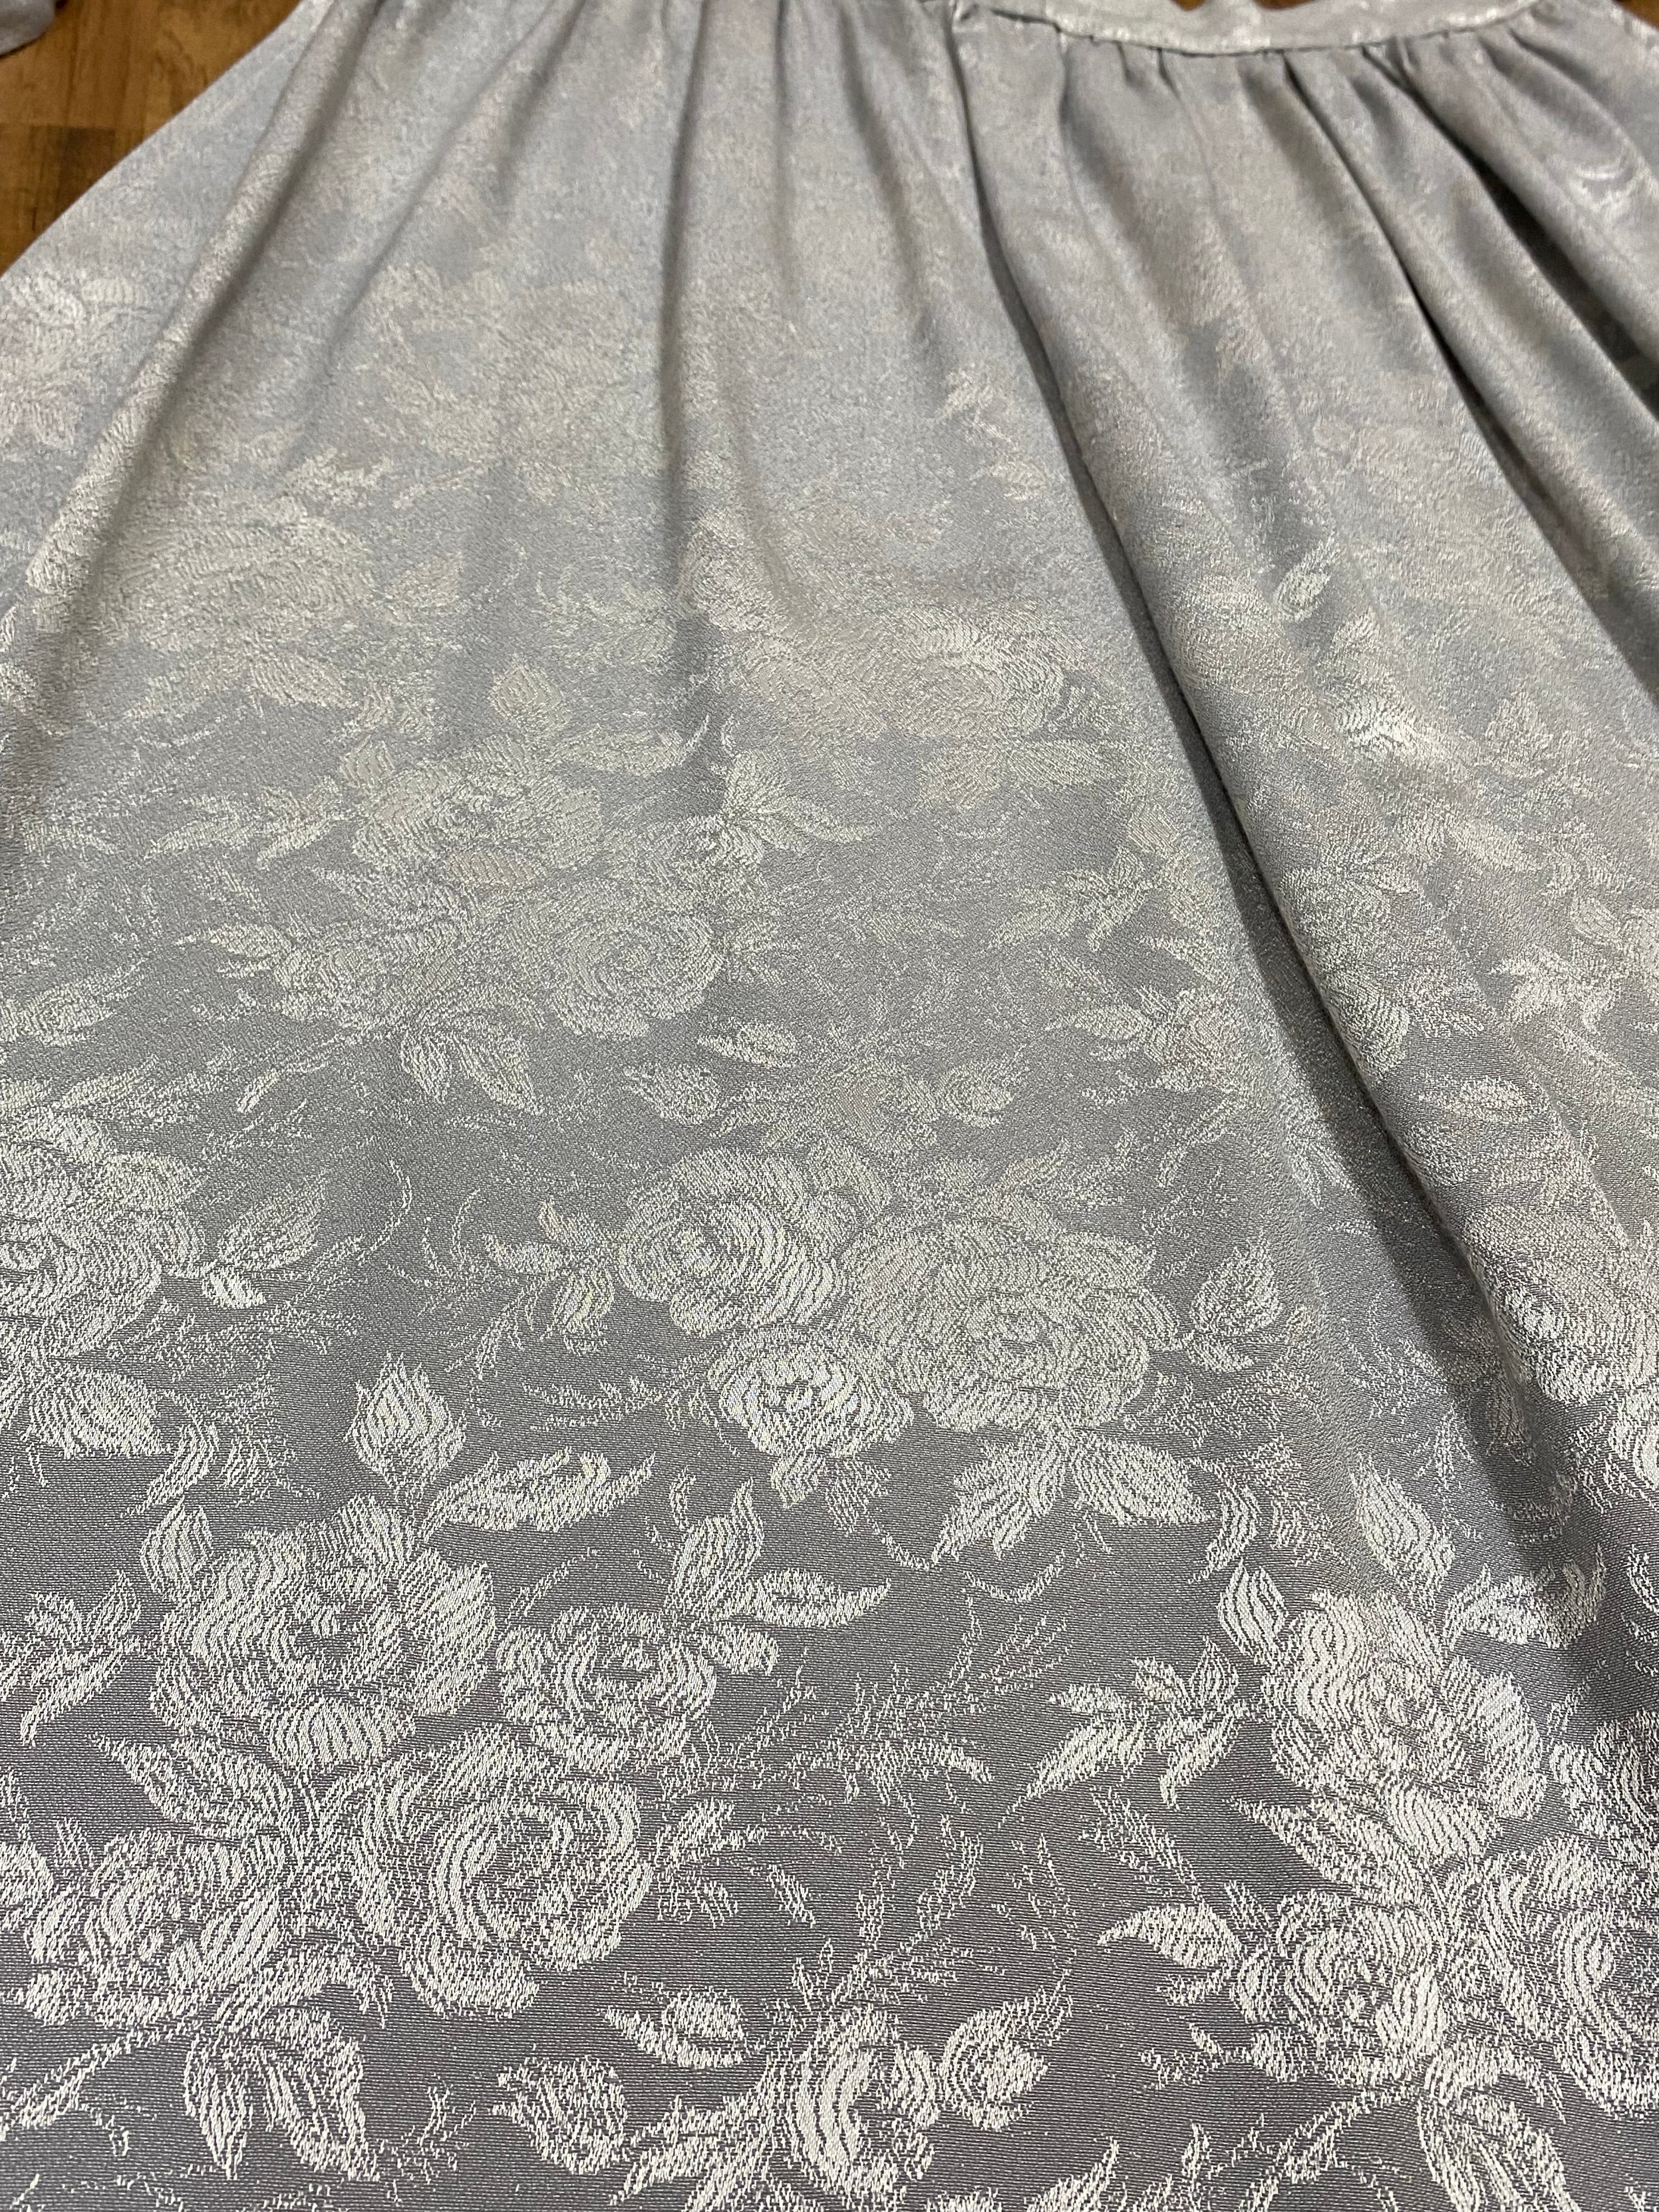 Lange Vintage Dirndl-Schürze für Trachtenkleid in silber/grau 93 cm lang